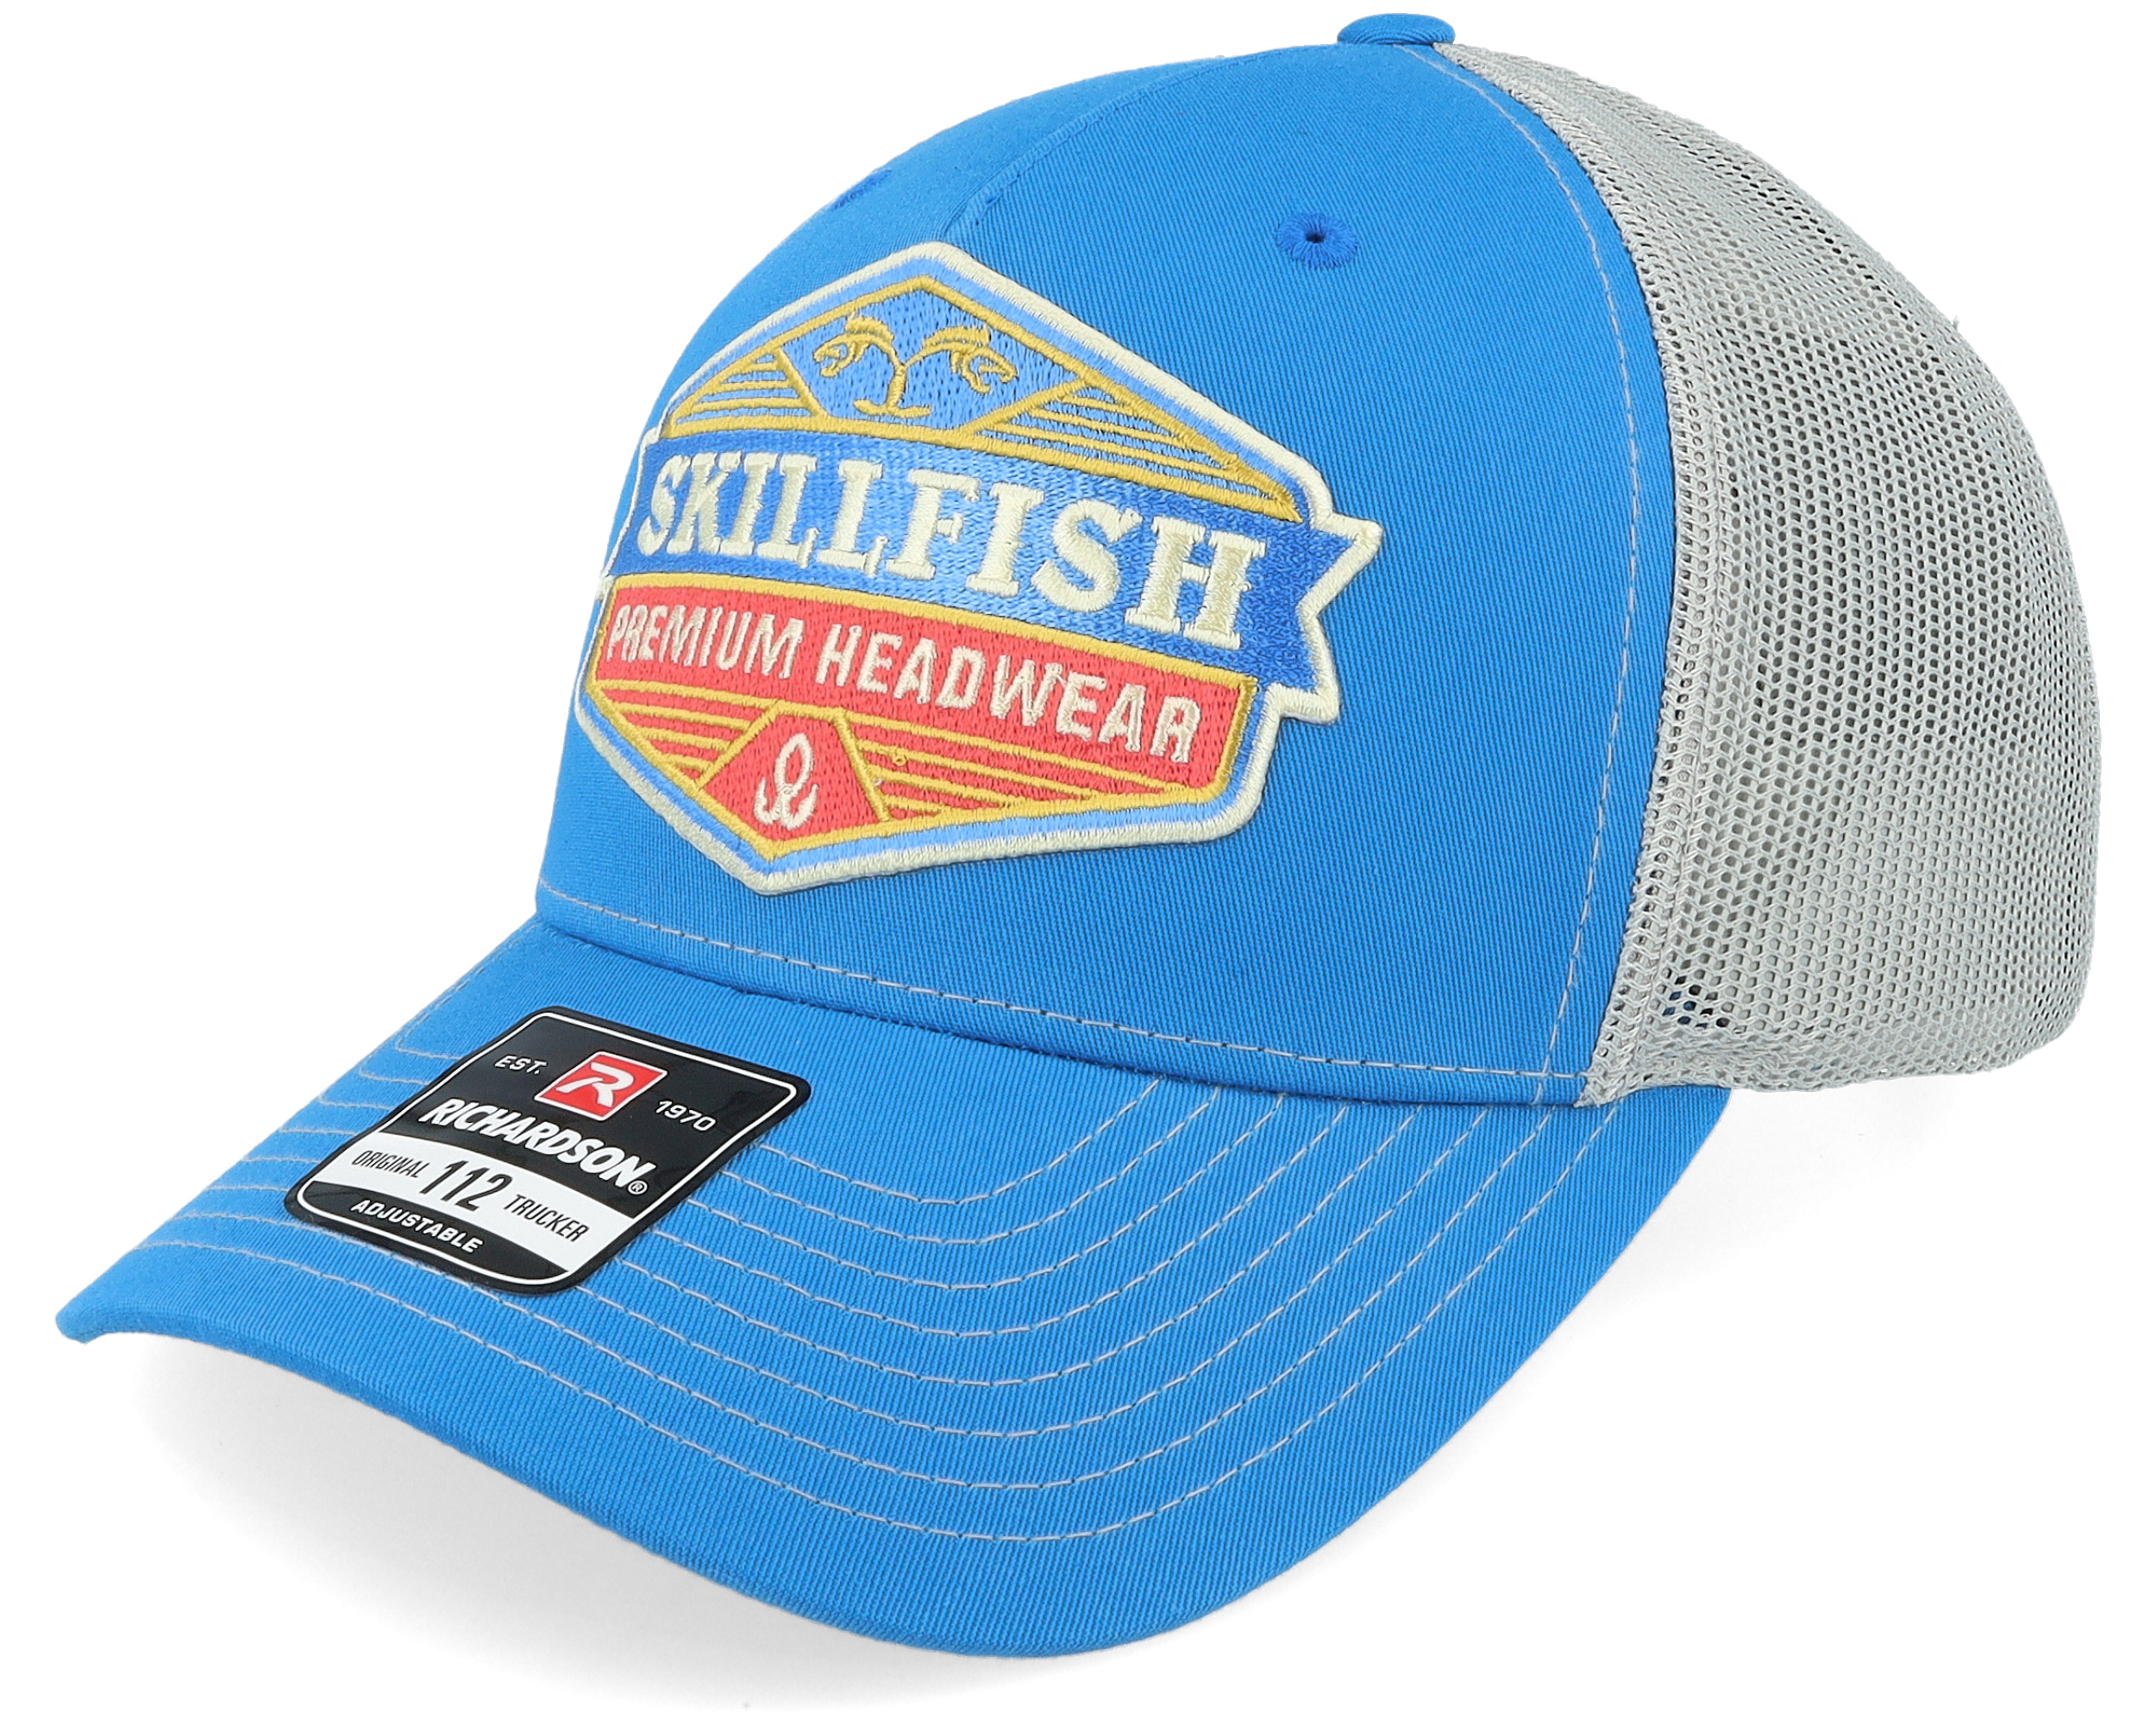 Skillfish - Beige Trucker Cap - Crimsonwave Logo 112 Split Biscuit/True Blue Trucker @ Hatstore